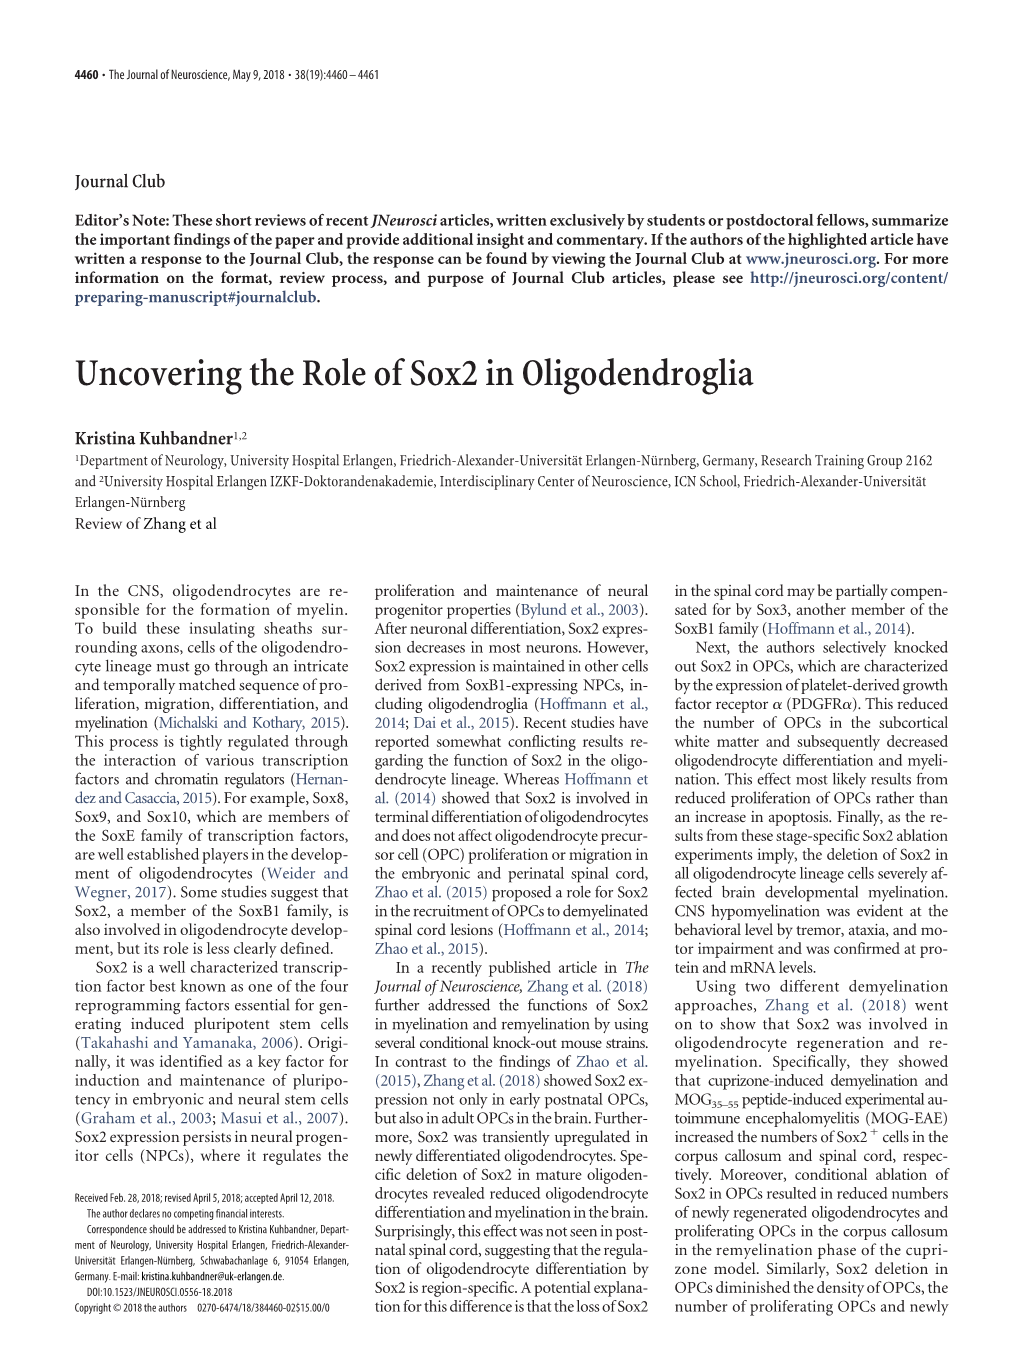 Uncovering the Role of Sox2 in Oligodendroglia